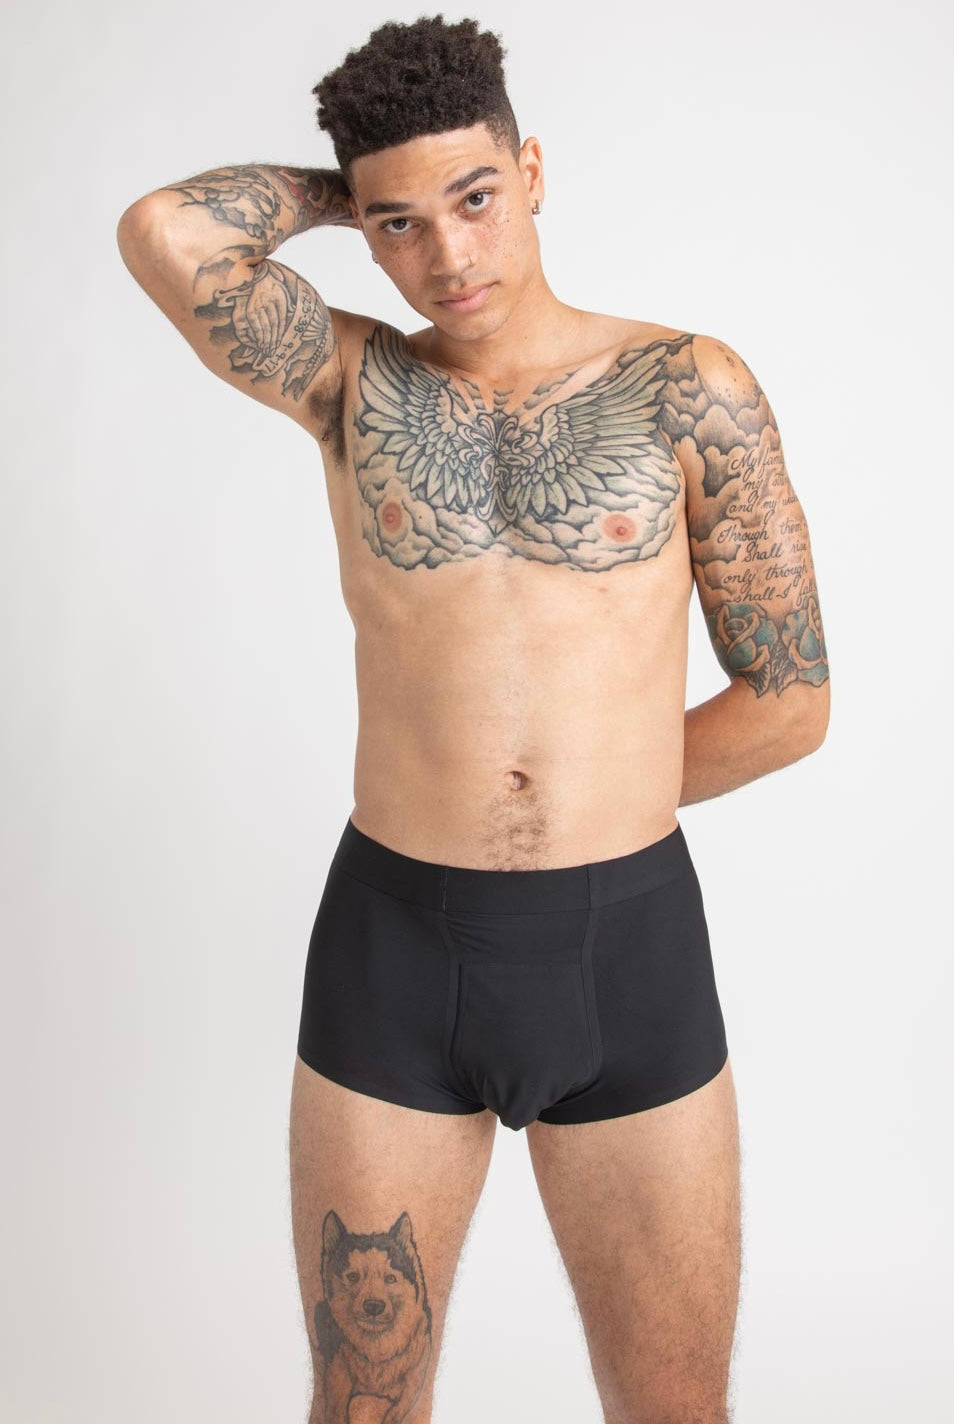 Waterproof Underwear for Men